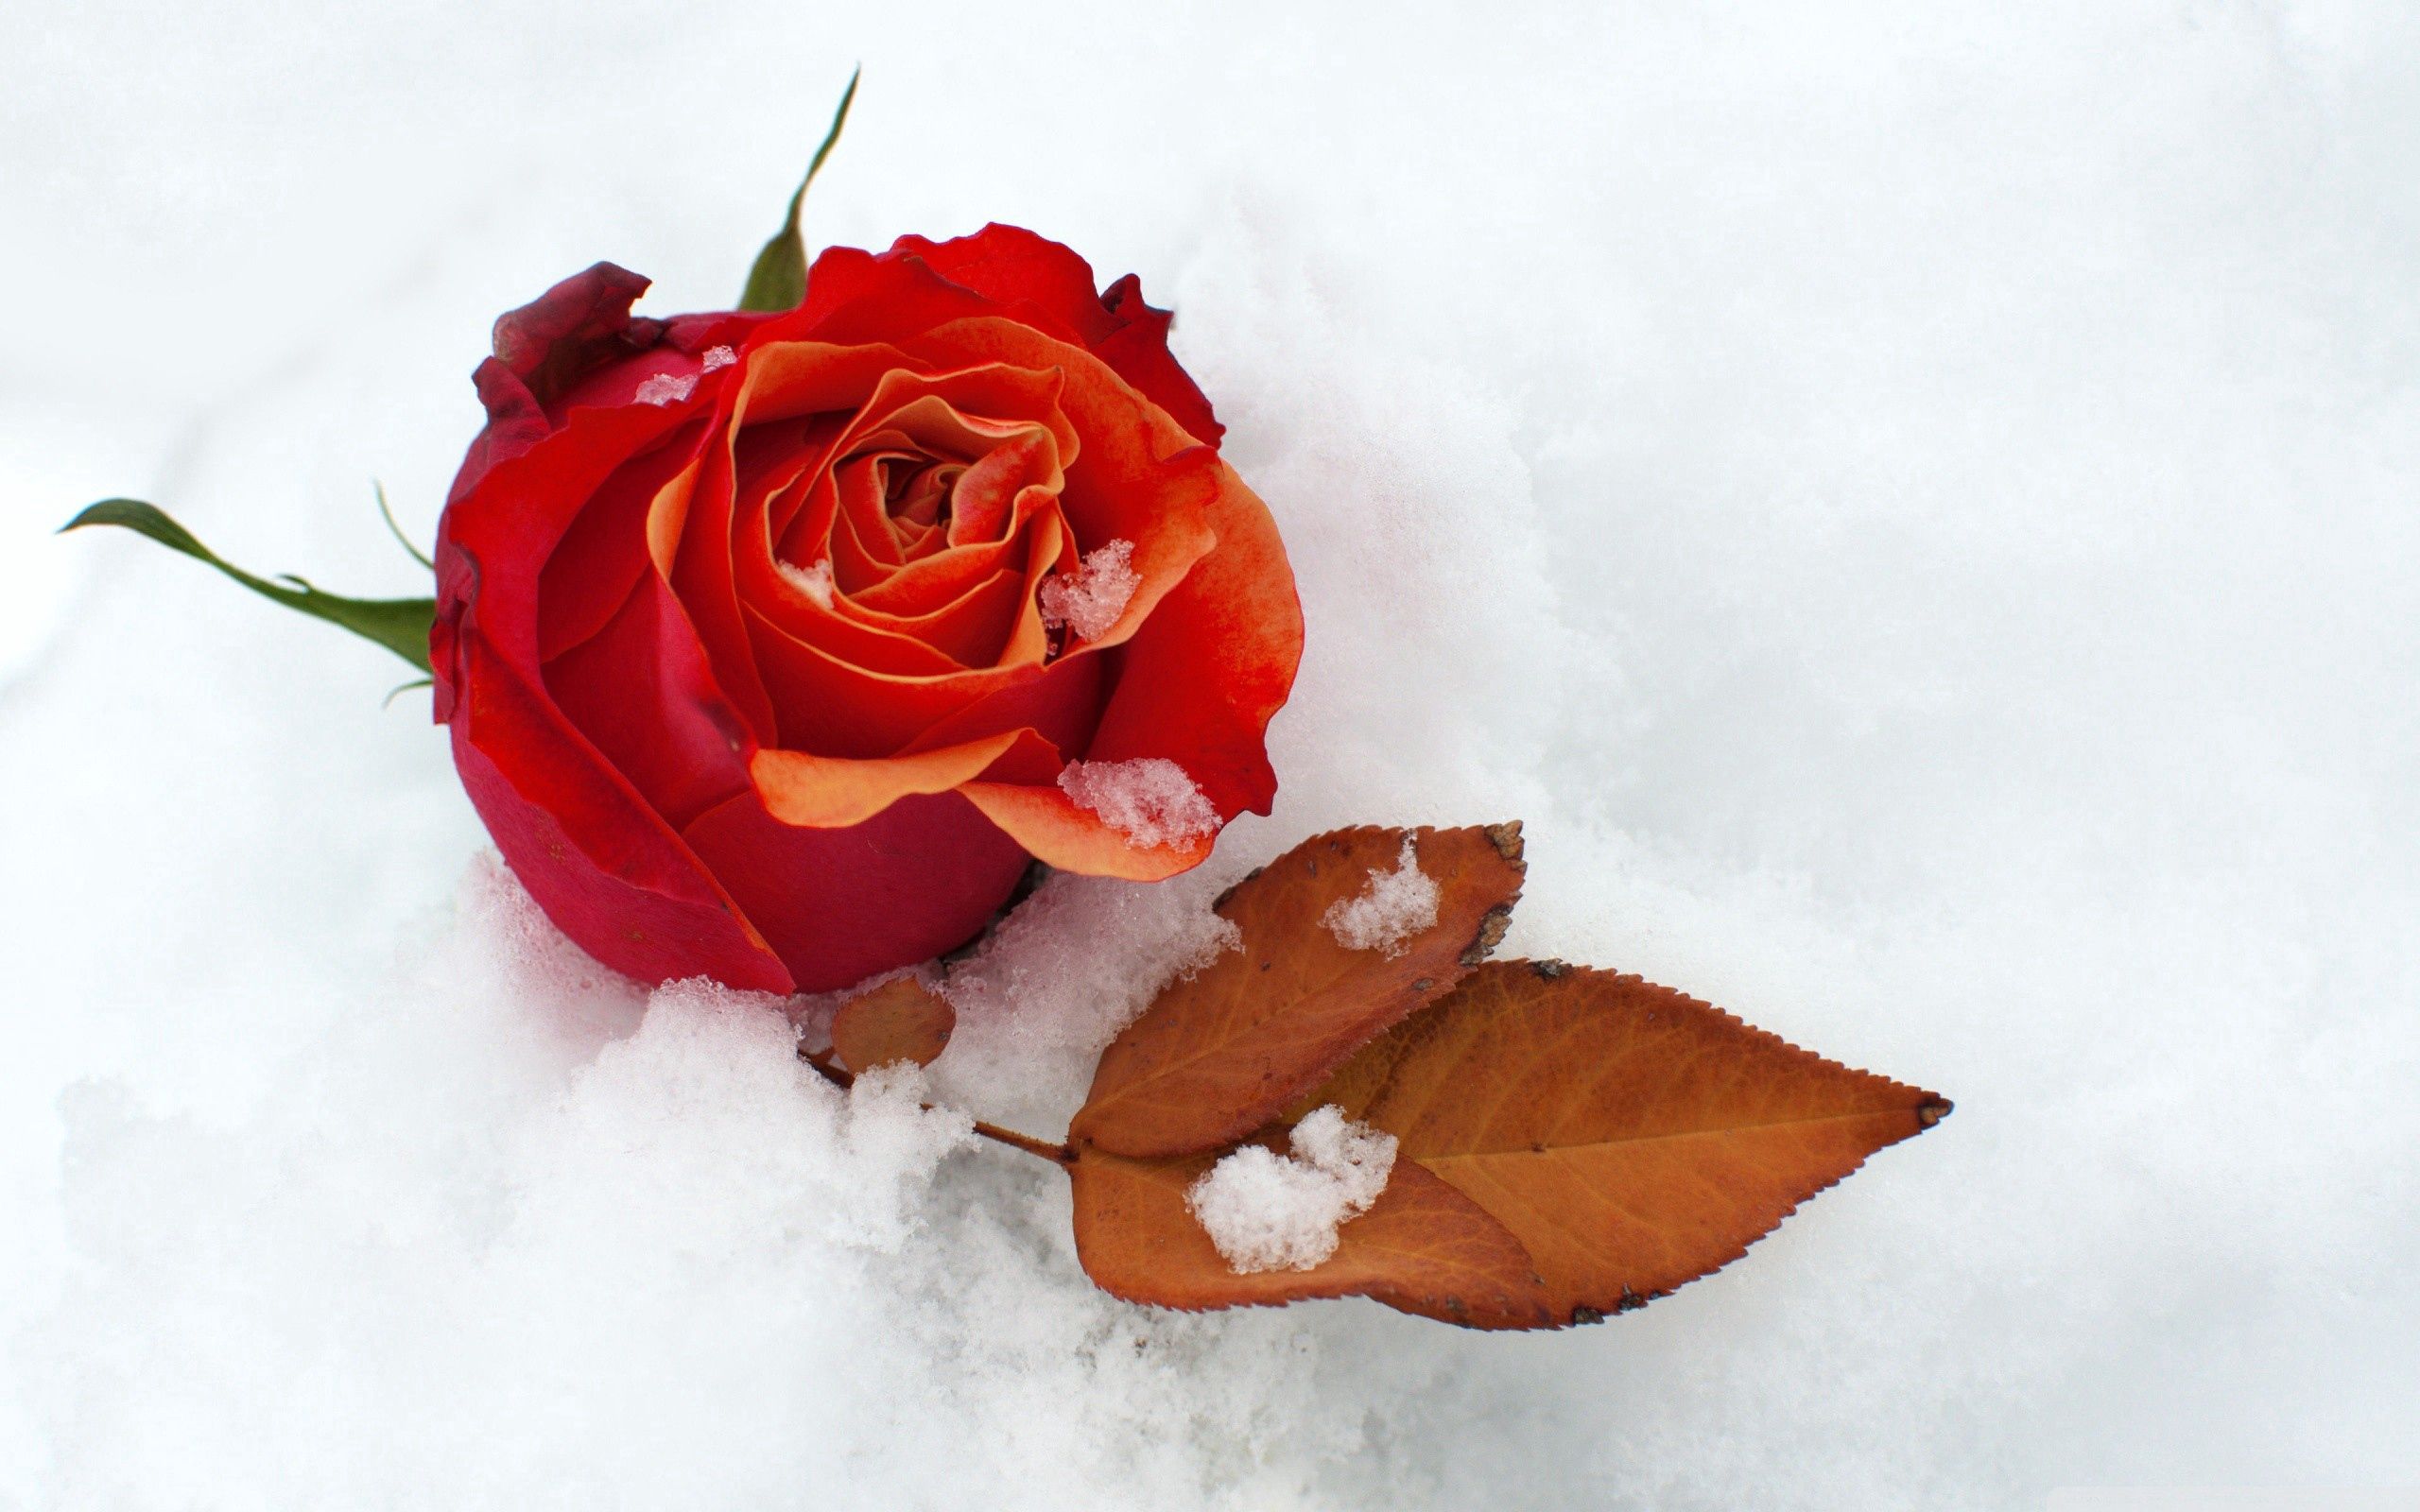 Скачать обои бесплатно Холод, Листок, Снег, Бутон, Цветок, Роза, Цветы картинка на рабочий стол ПК